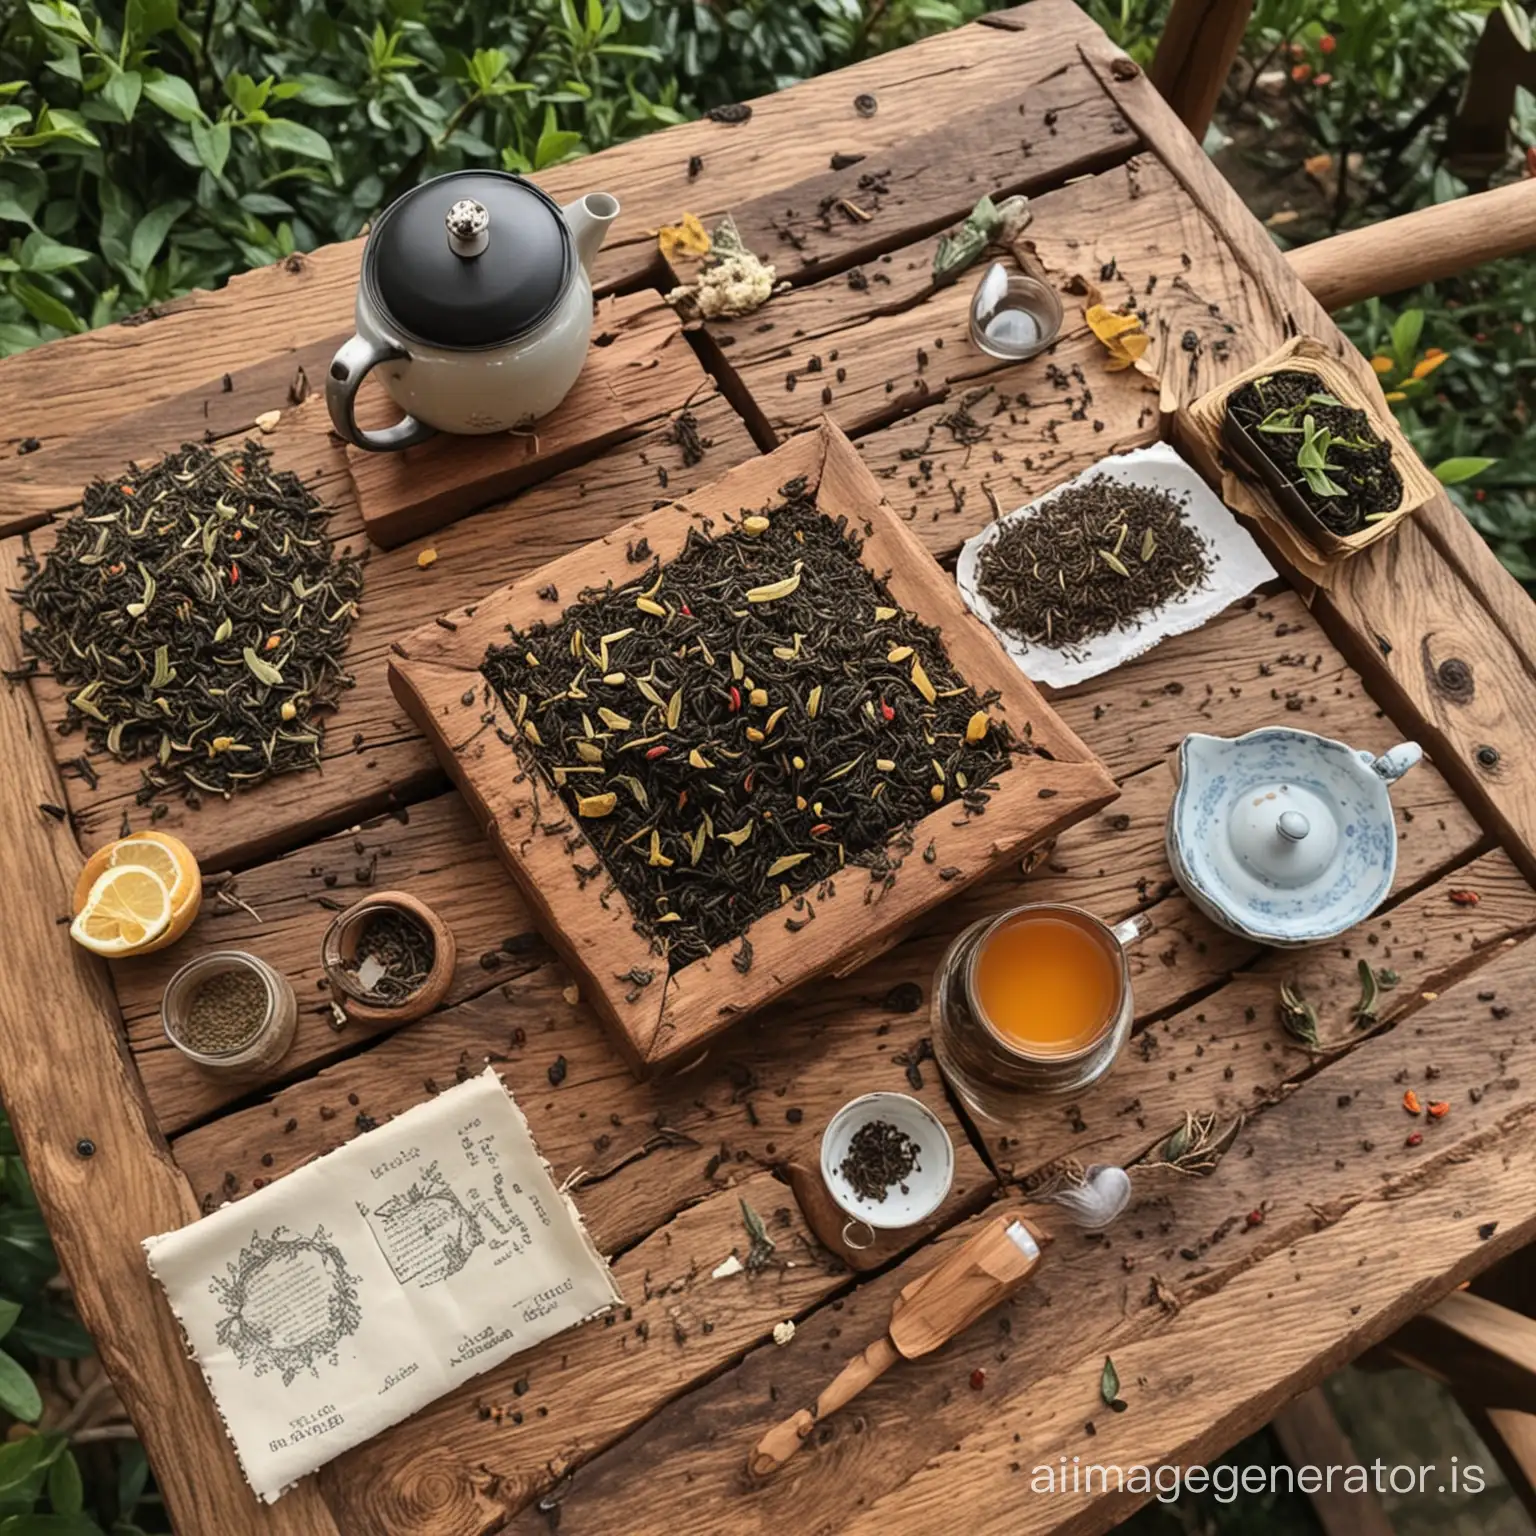 Varieties-of-Tea-on-a-Rustic-Table-in-a-Serene-Atmosphere